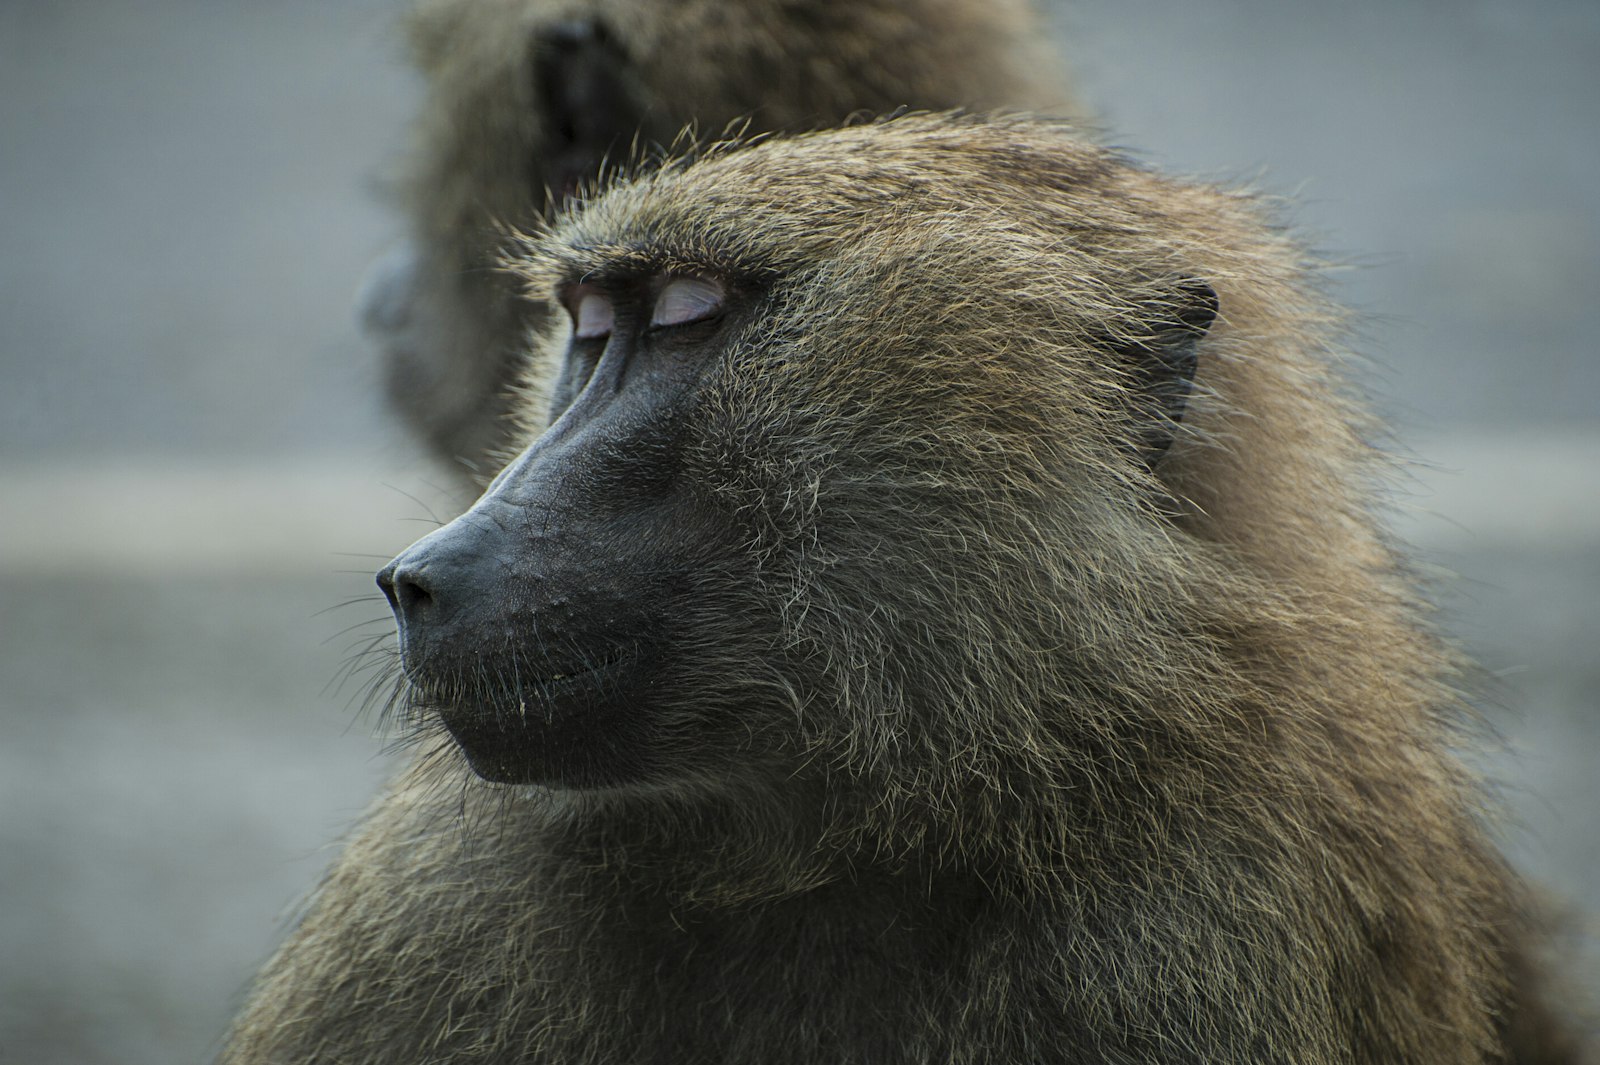 Nikon AF-S Nikkor 70-300mm F4.5-5.6G VR sample photo. Sleeping brown primate photography